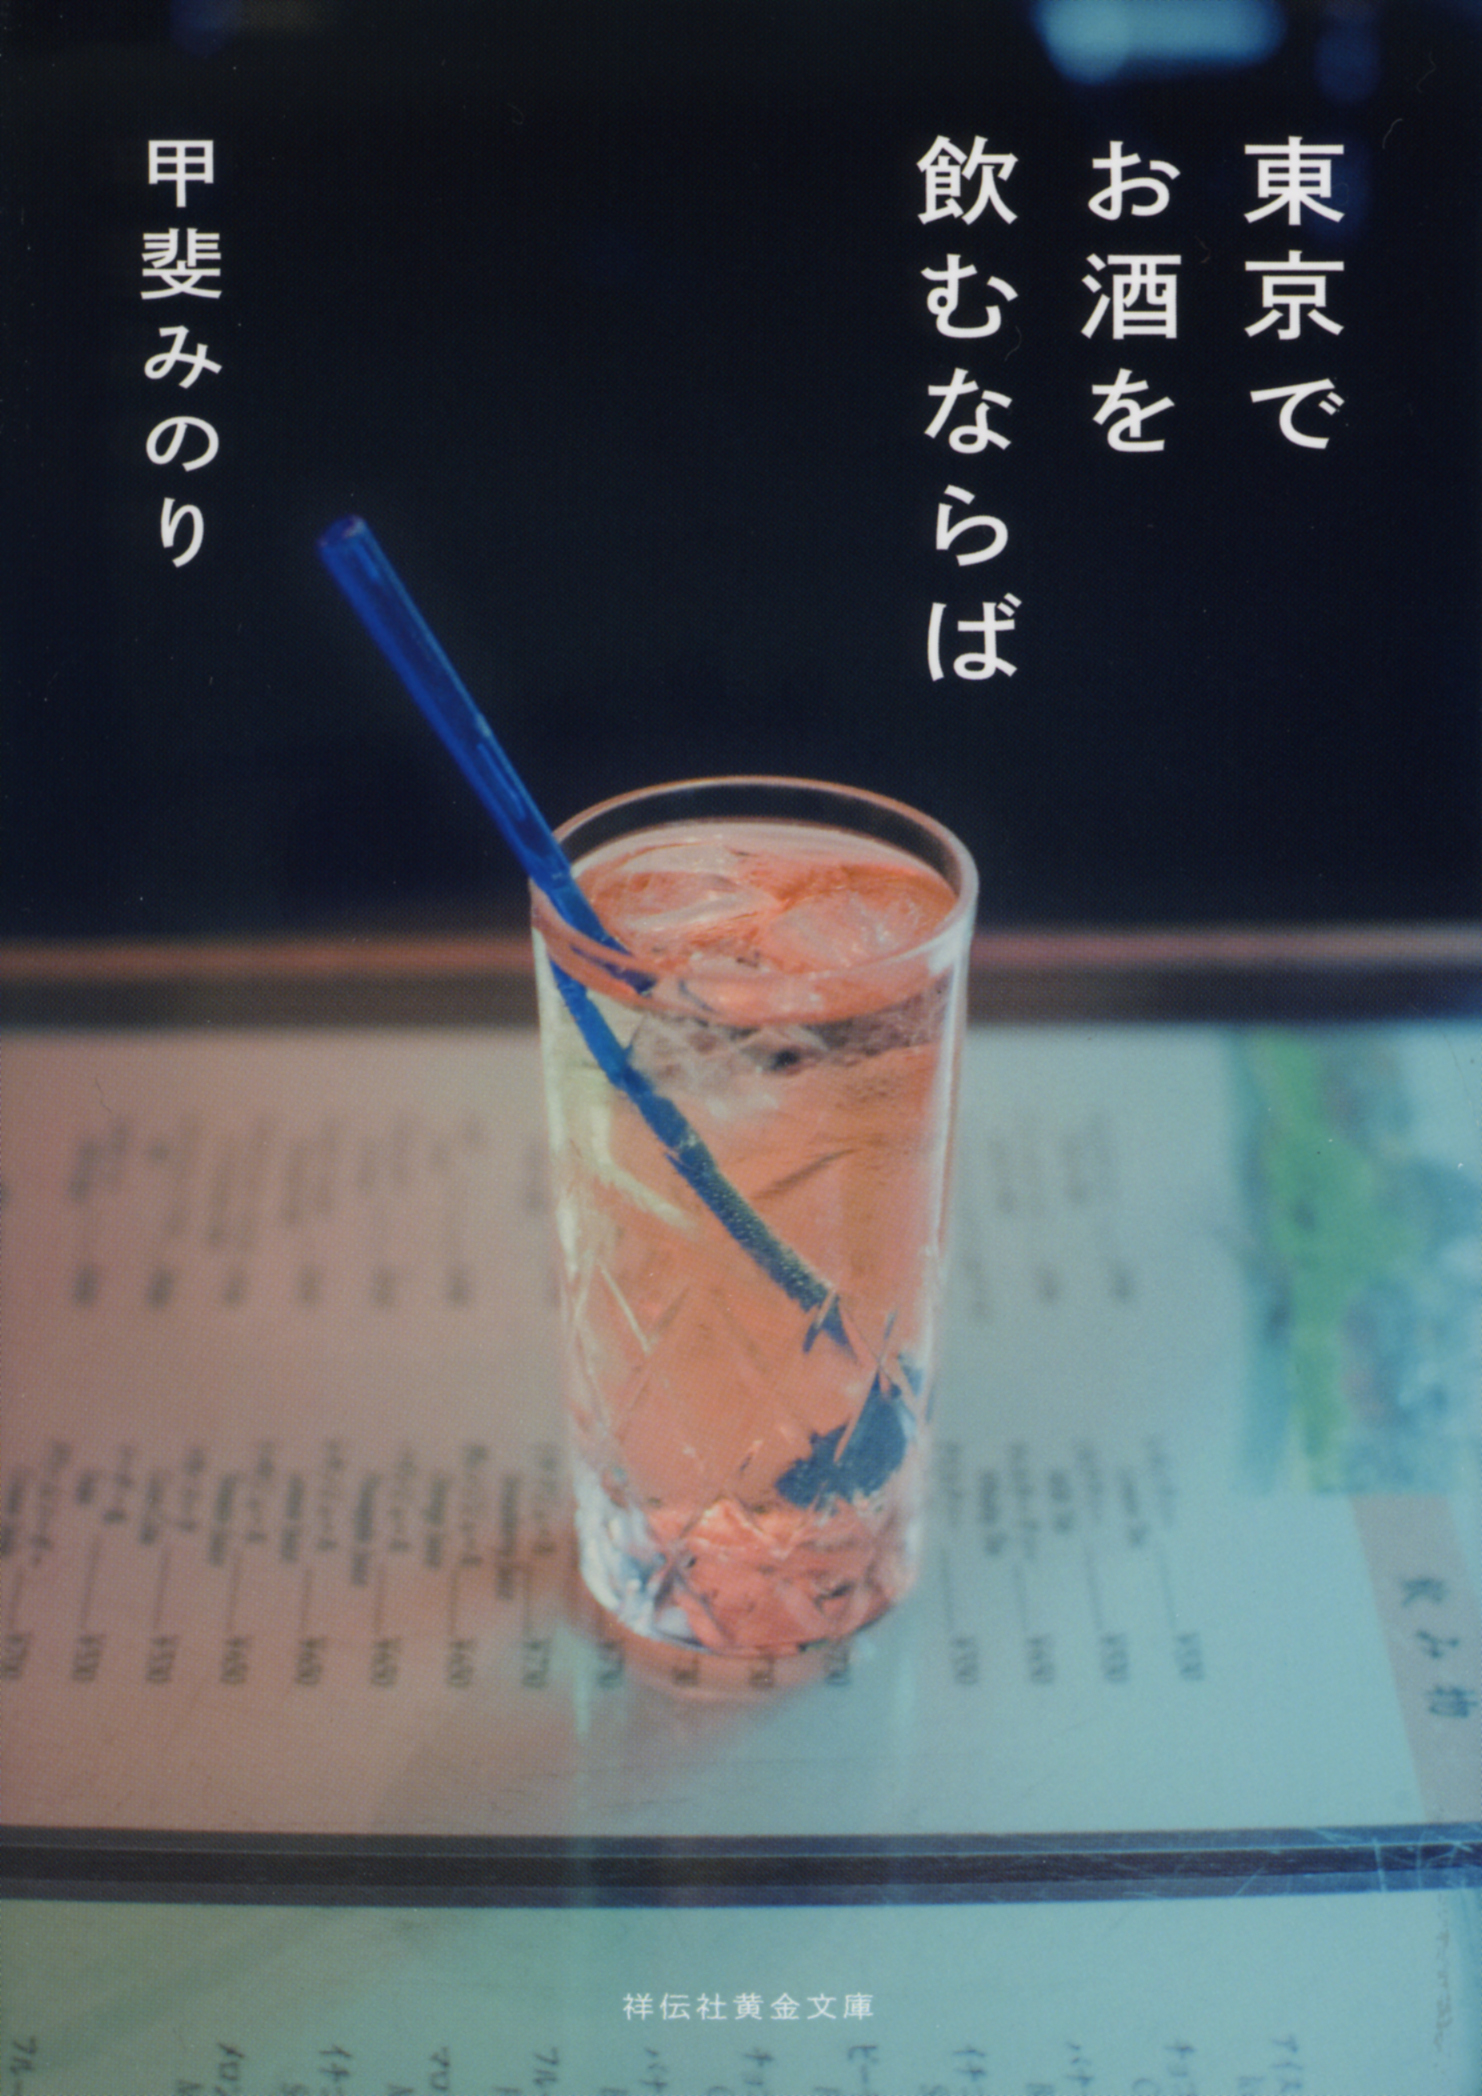 東京でお酒を飲むならばの商品画像